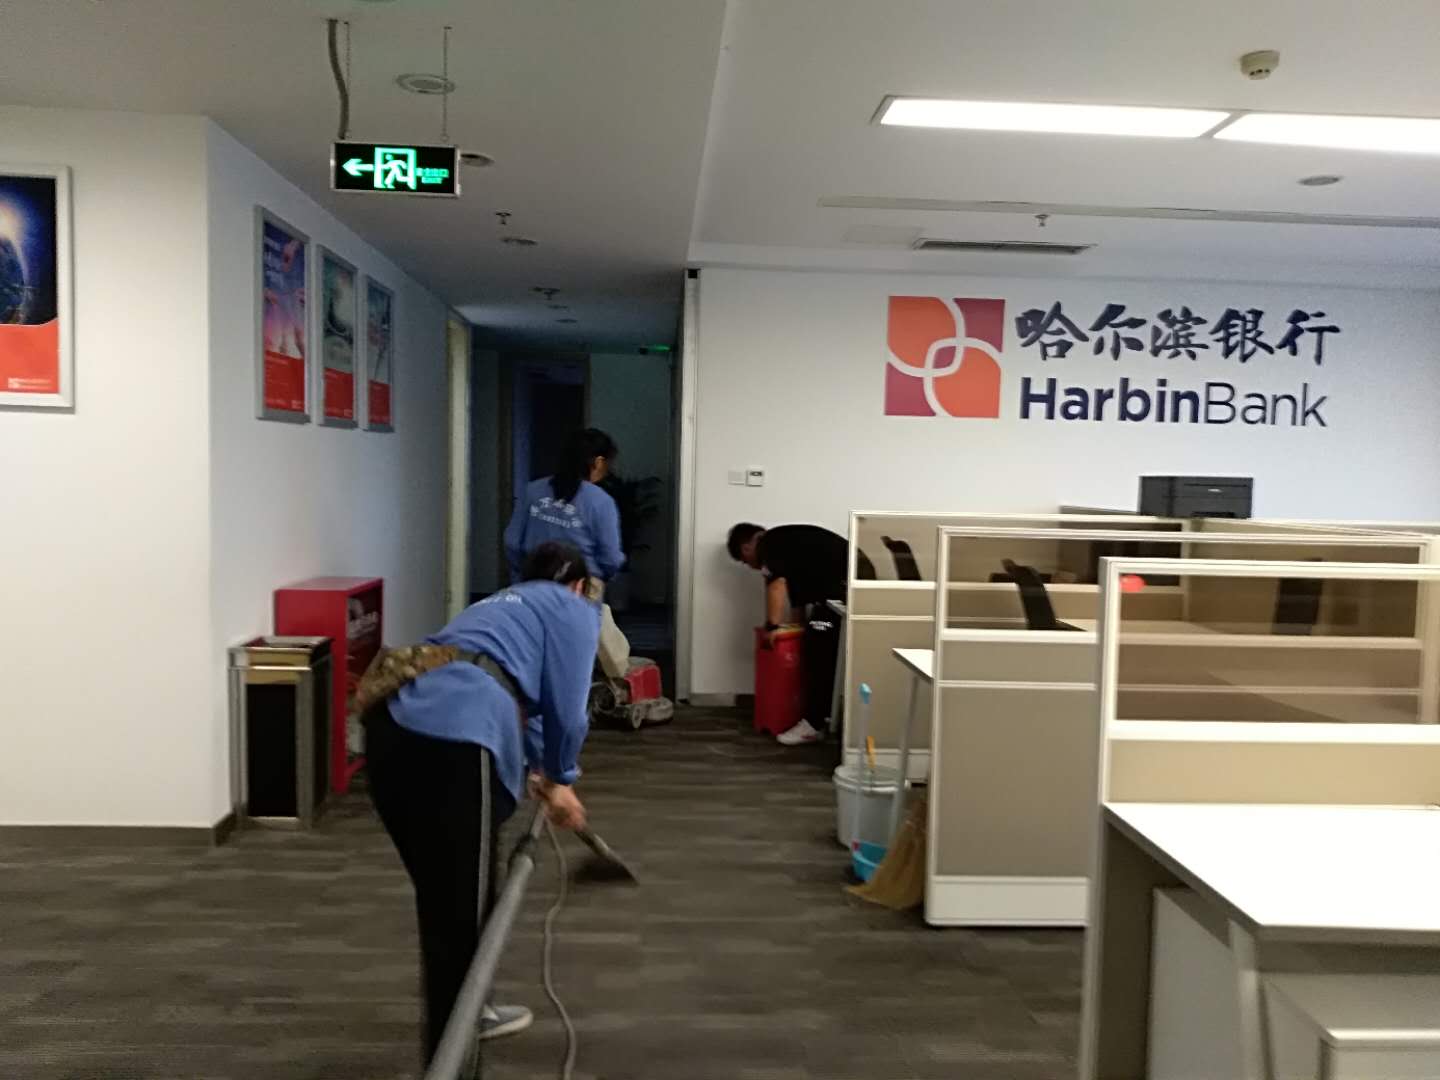 2019年5月28日重庆万州哈尔滨银行地毯清洁由重庆美万家保洁服务有限公司承接并顺利完工，取得甲方一致好评！